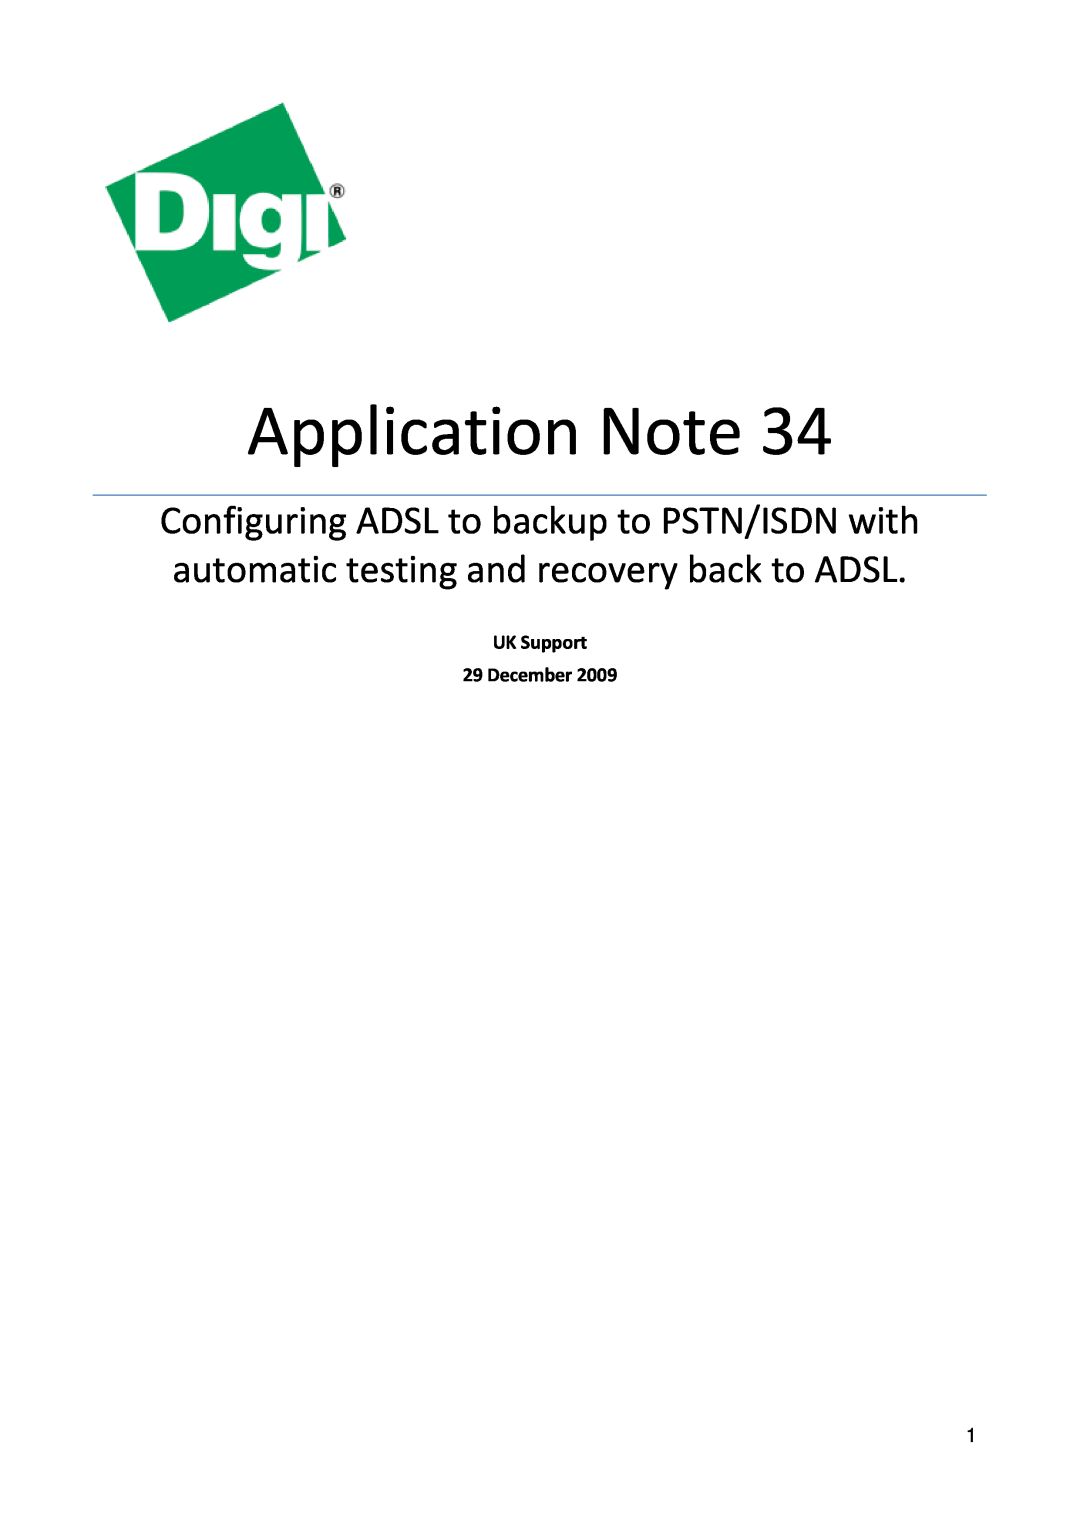 Digi 34 manual Application Note, UK Support 29 December 